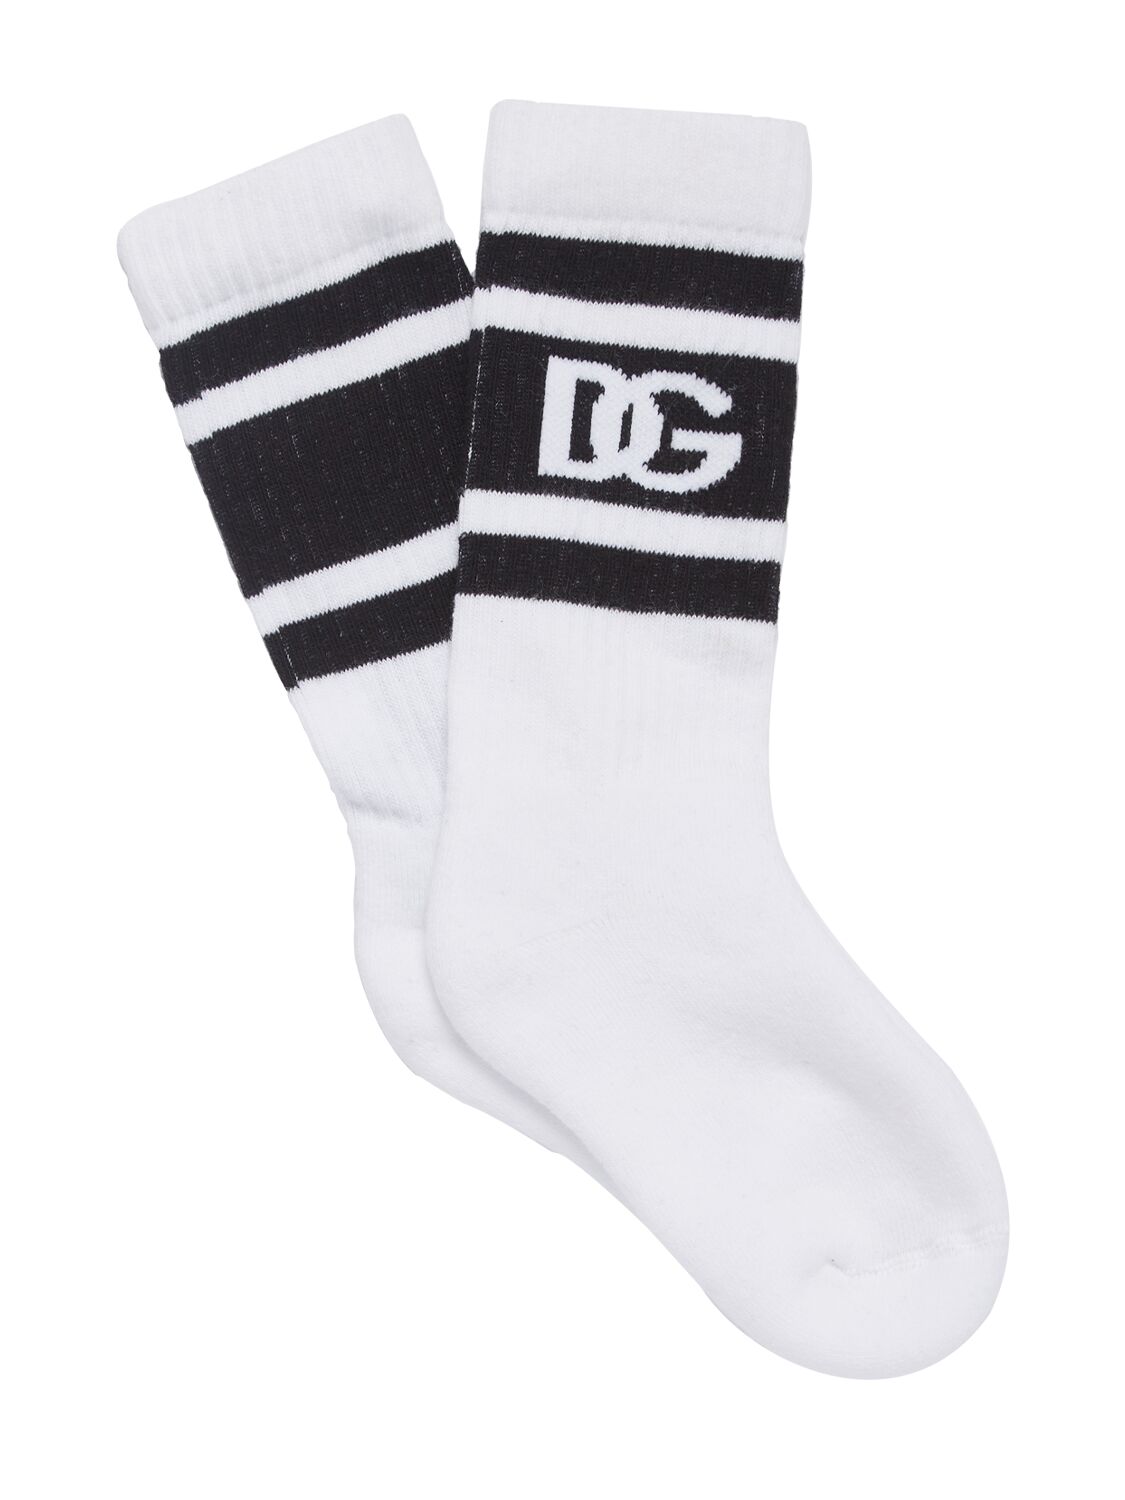 Dolce & Gabbana Babies' Socken Aus Baumwollmischung Mit Logo In Weiss,schwarz